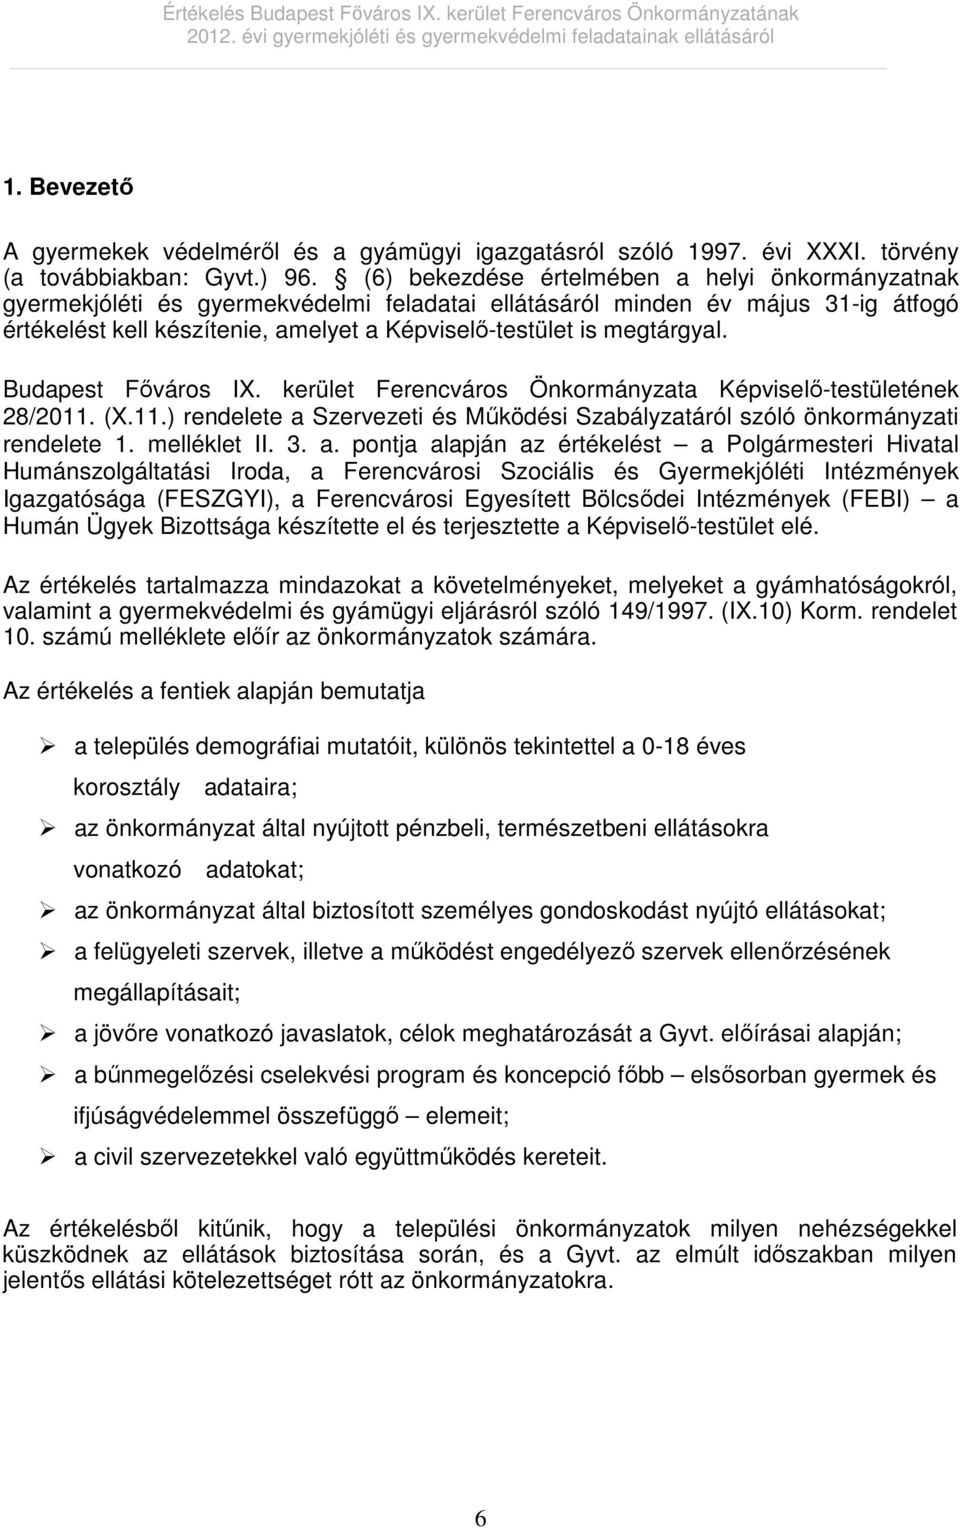 megtárgyal. Budapest Főváros IX. kerület Ferencváros Önkormányzata Képviselő-testületének 28/2011. (X.11.) rendelete a Szervezeti és Működési Szabályzatáról szóló önkormányzati rendelete 1.